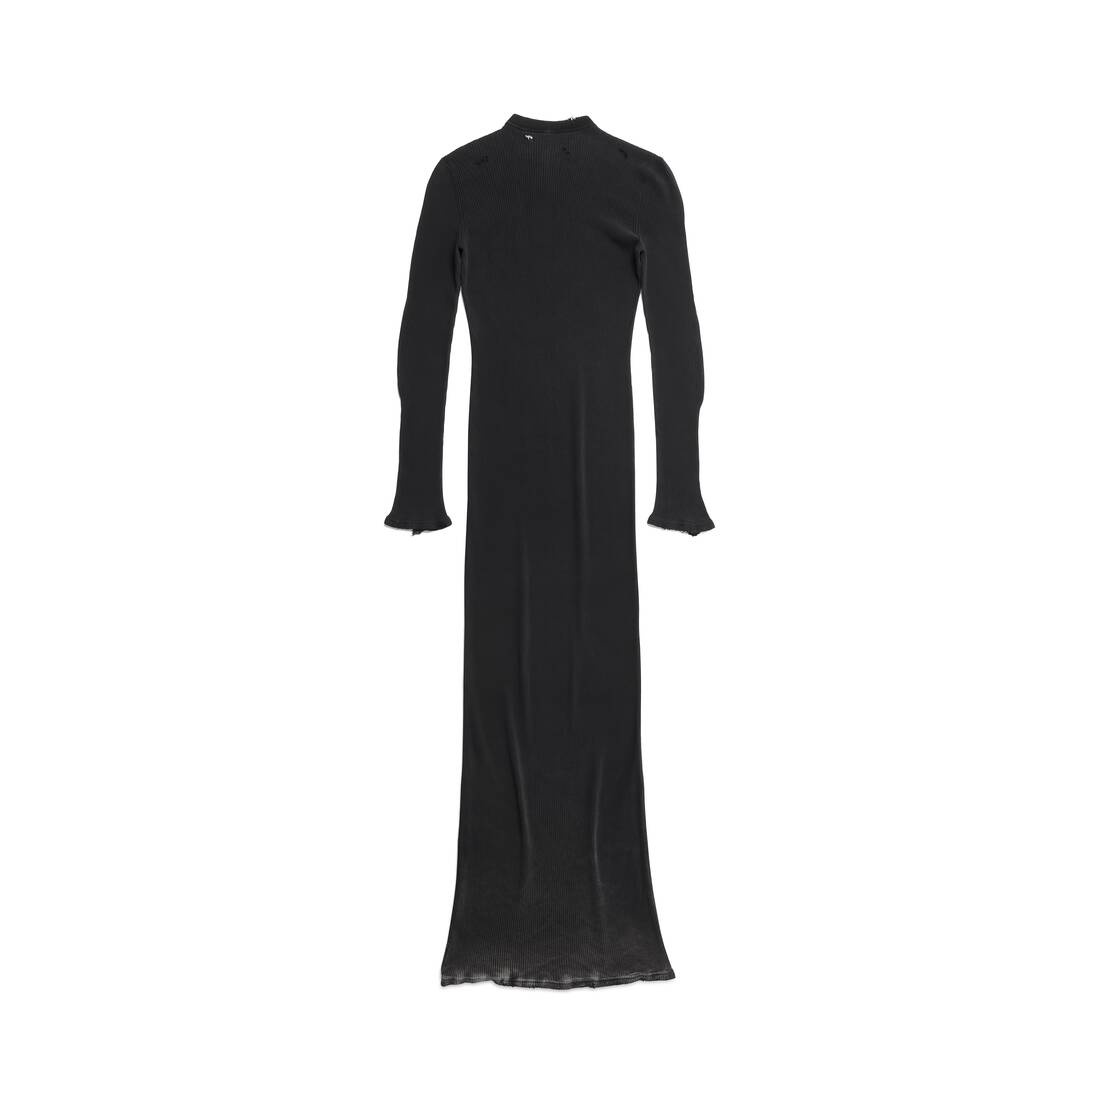 Women's Dress in Black Faded - 2